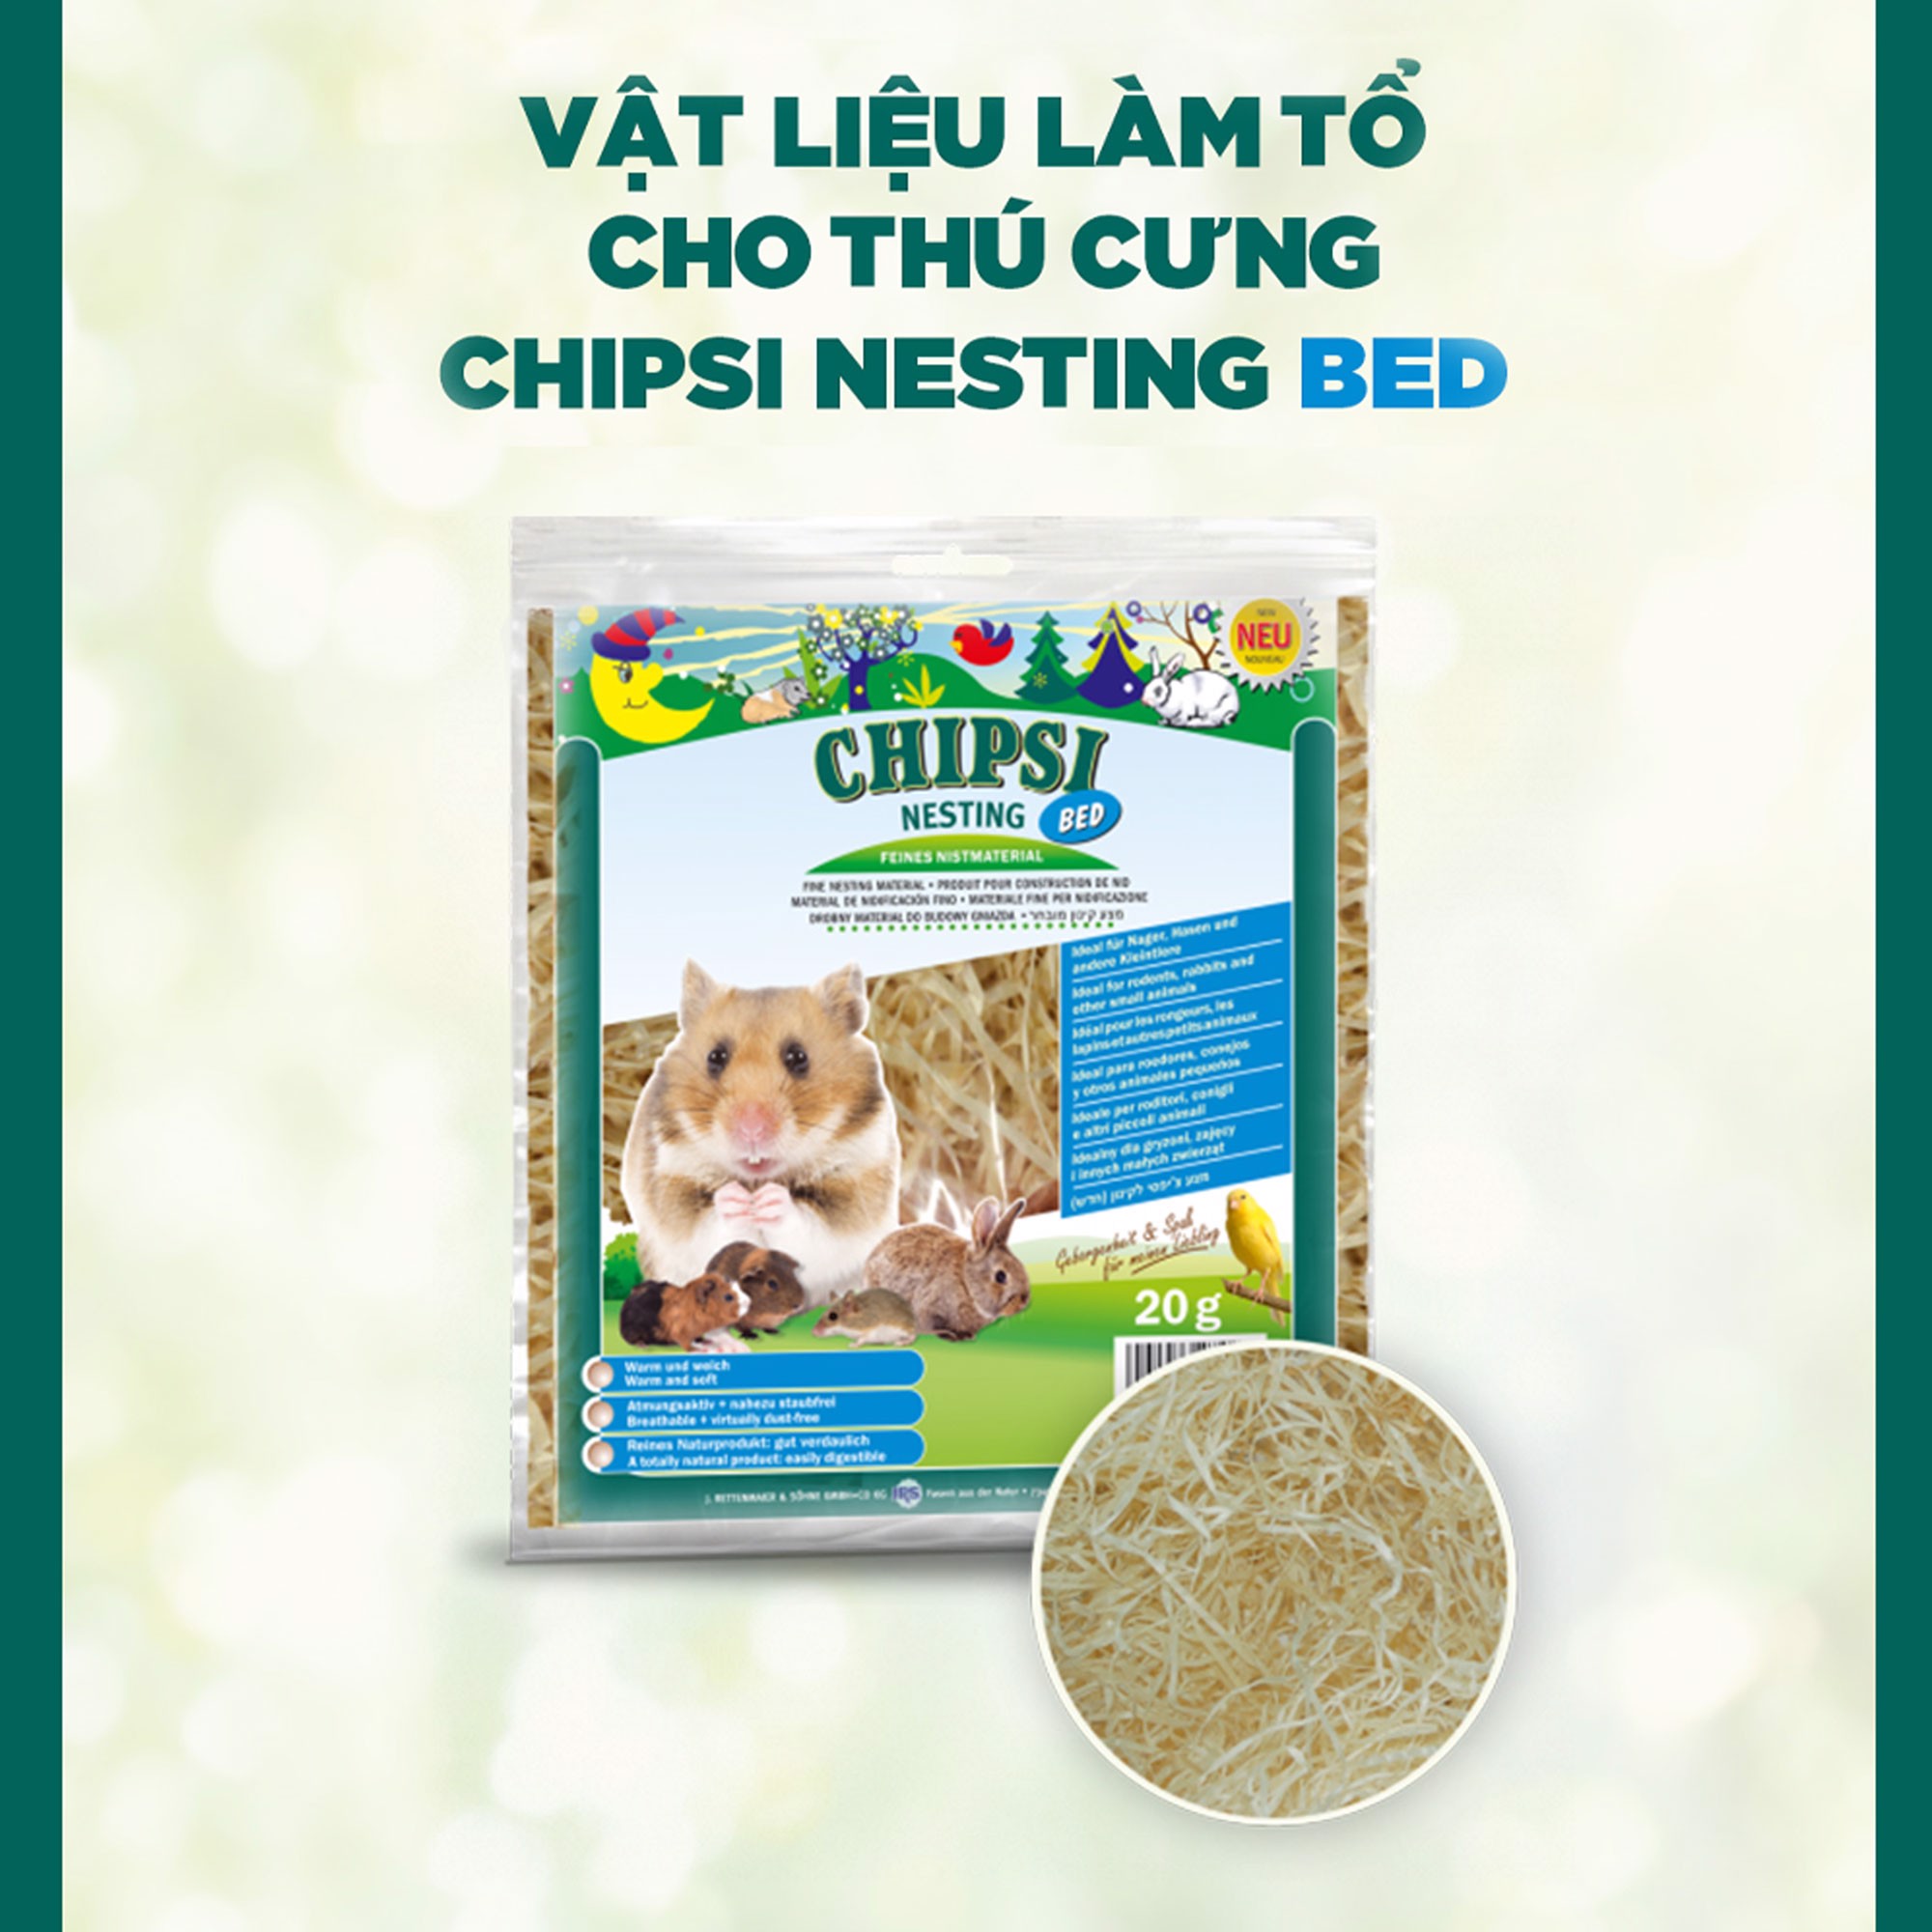 CHIPSI NESTING - Lót Chuồng Cho Hamster (Chuột/Chim/Bò sát/Sóc) | Vật liệu làm tổ cho thú cưng | 100% gỗ bào tự nhiên | Không bụi